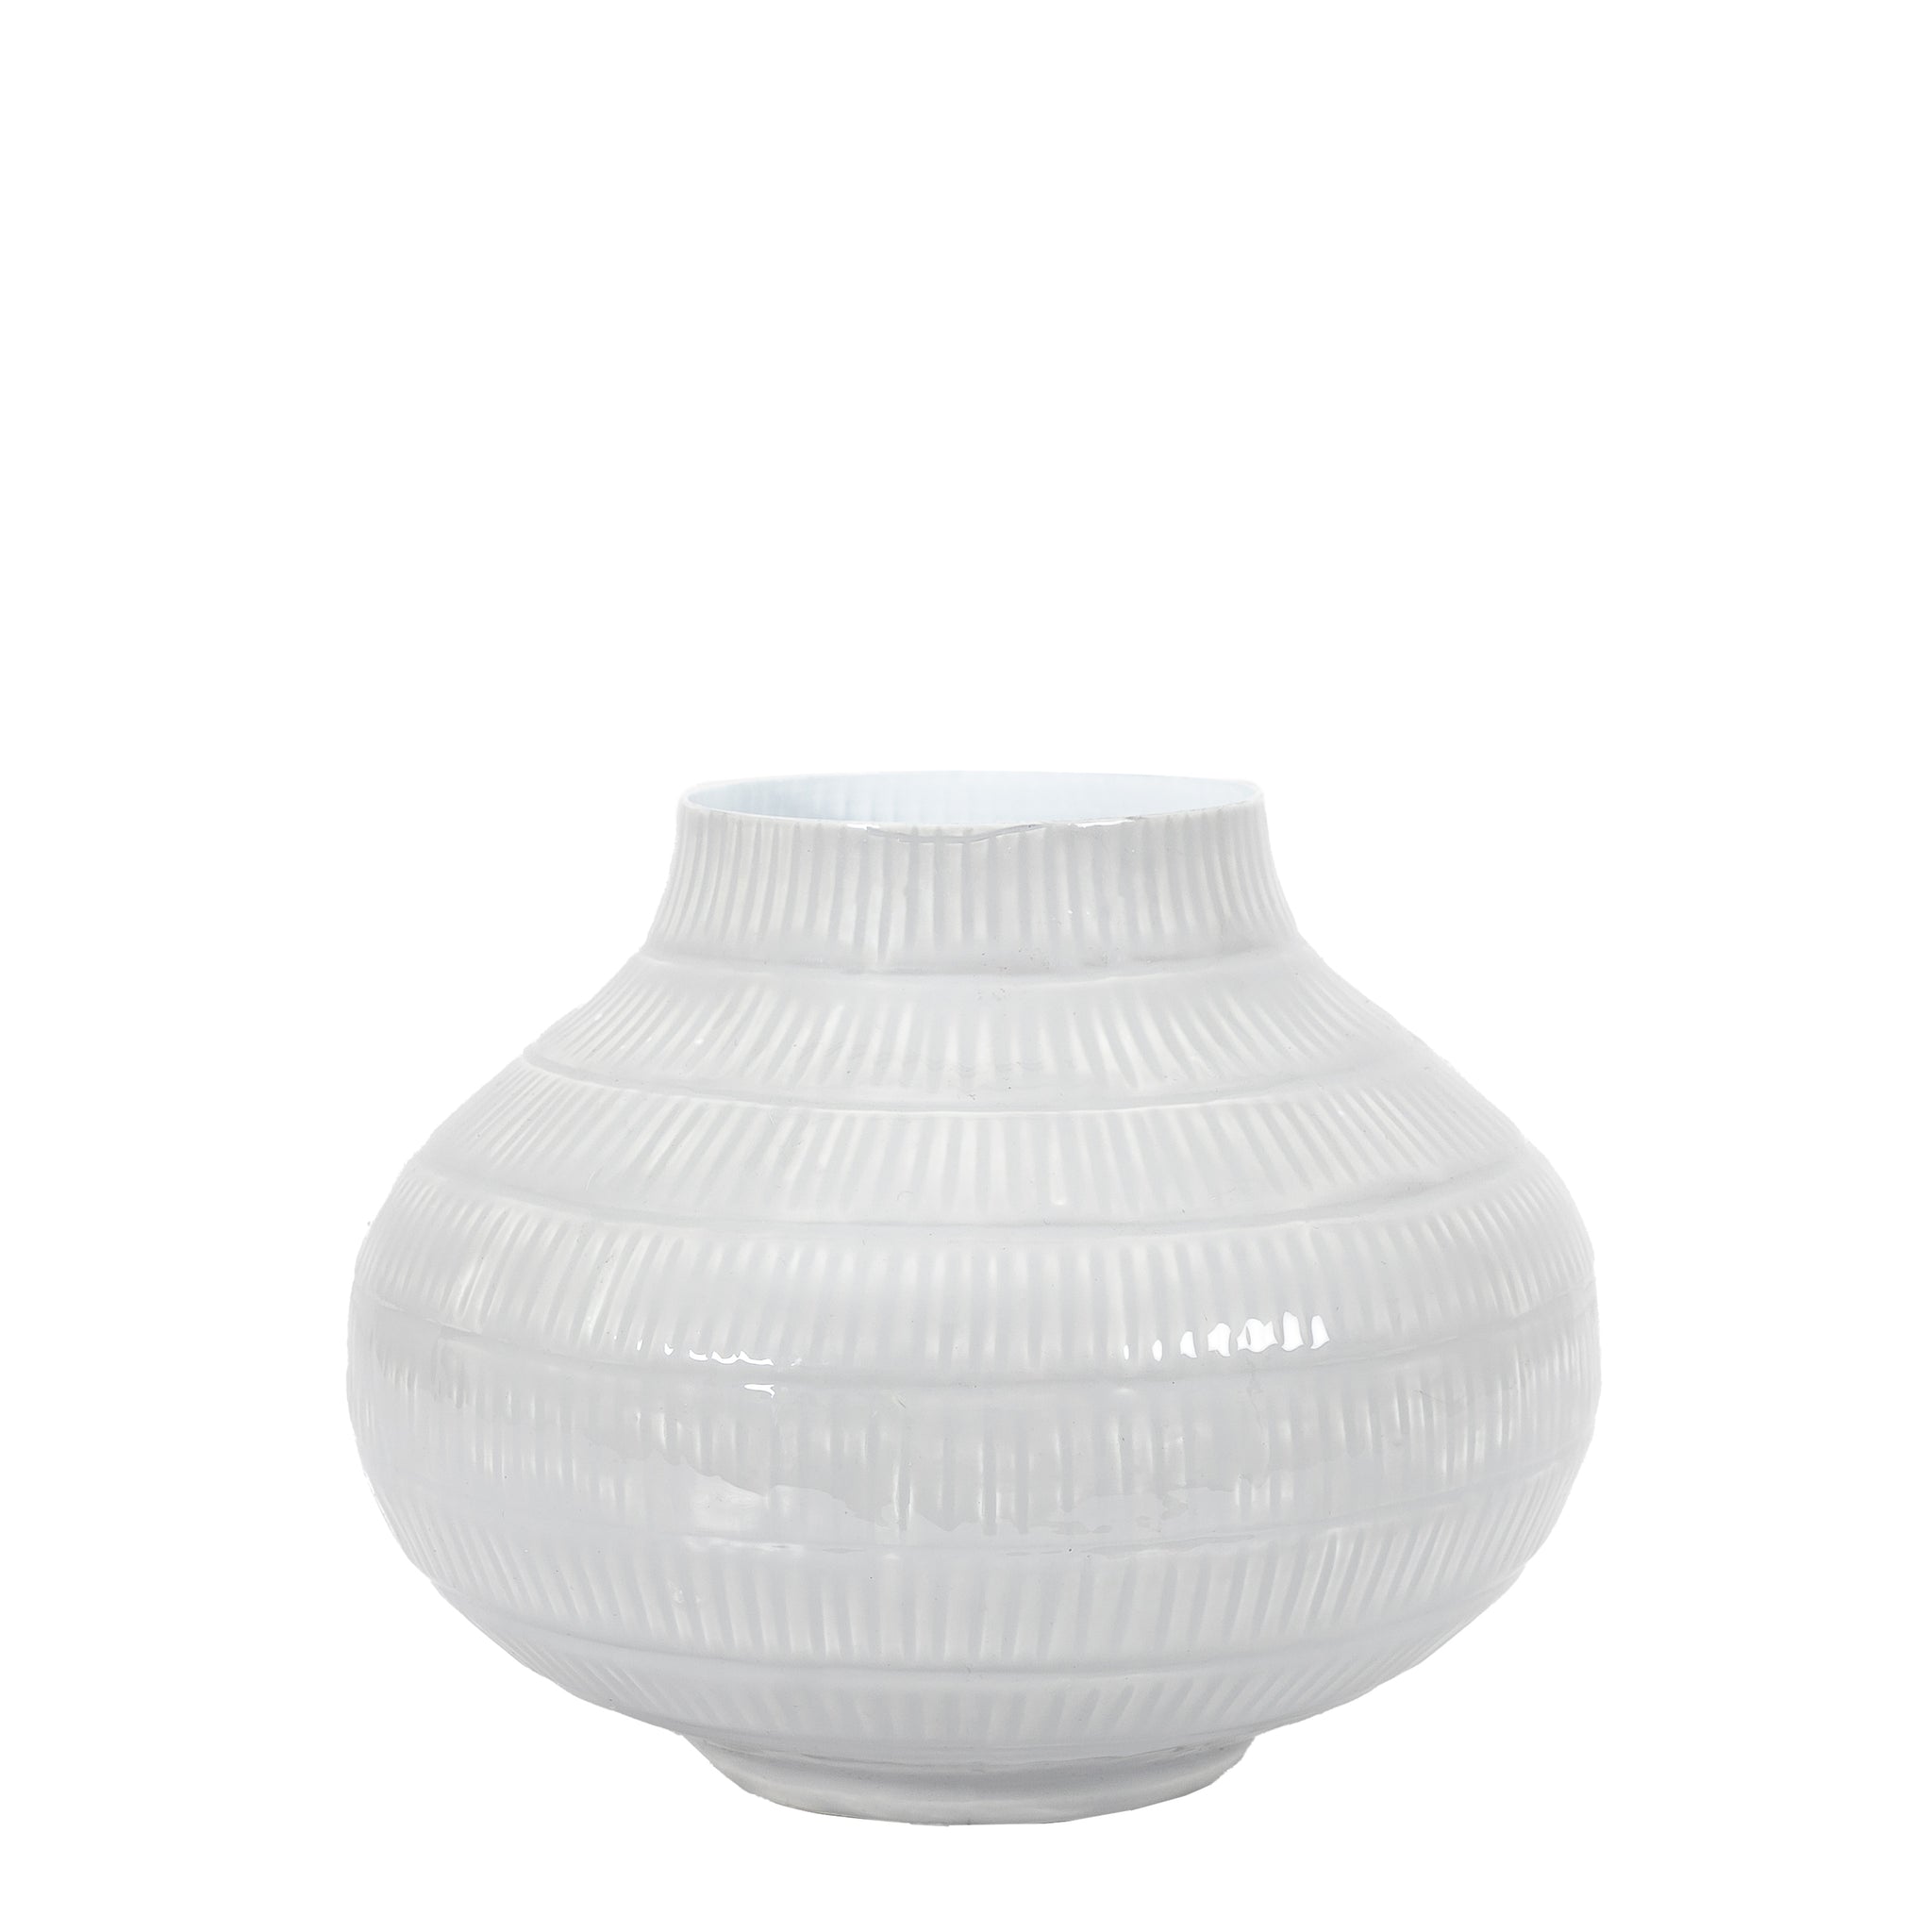 Emmie Vase Large Pale Grey